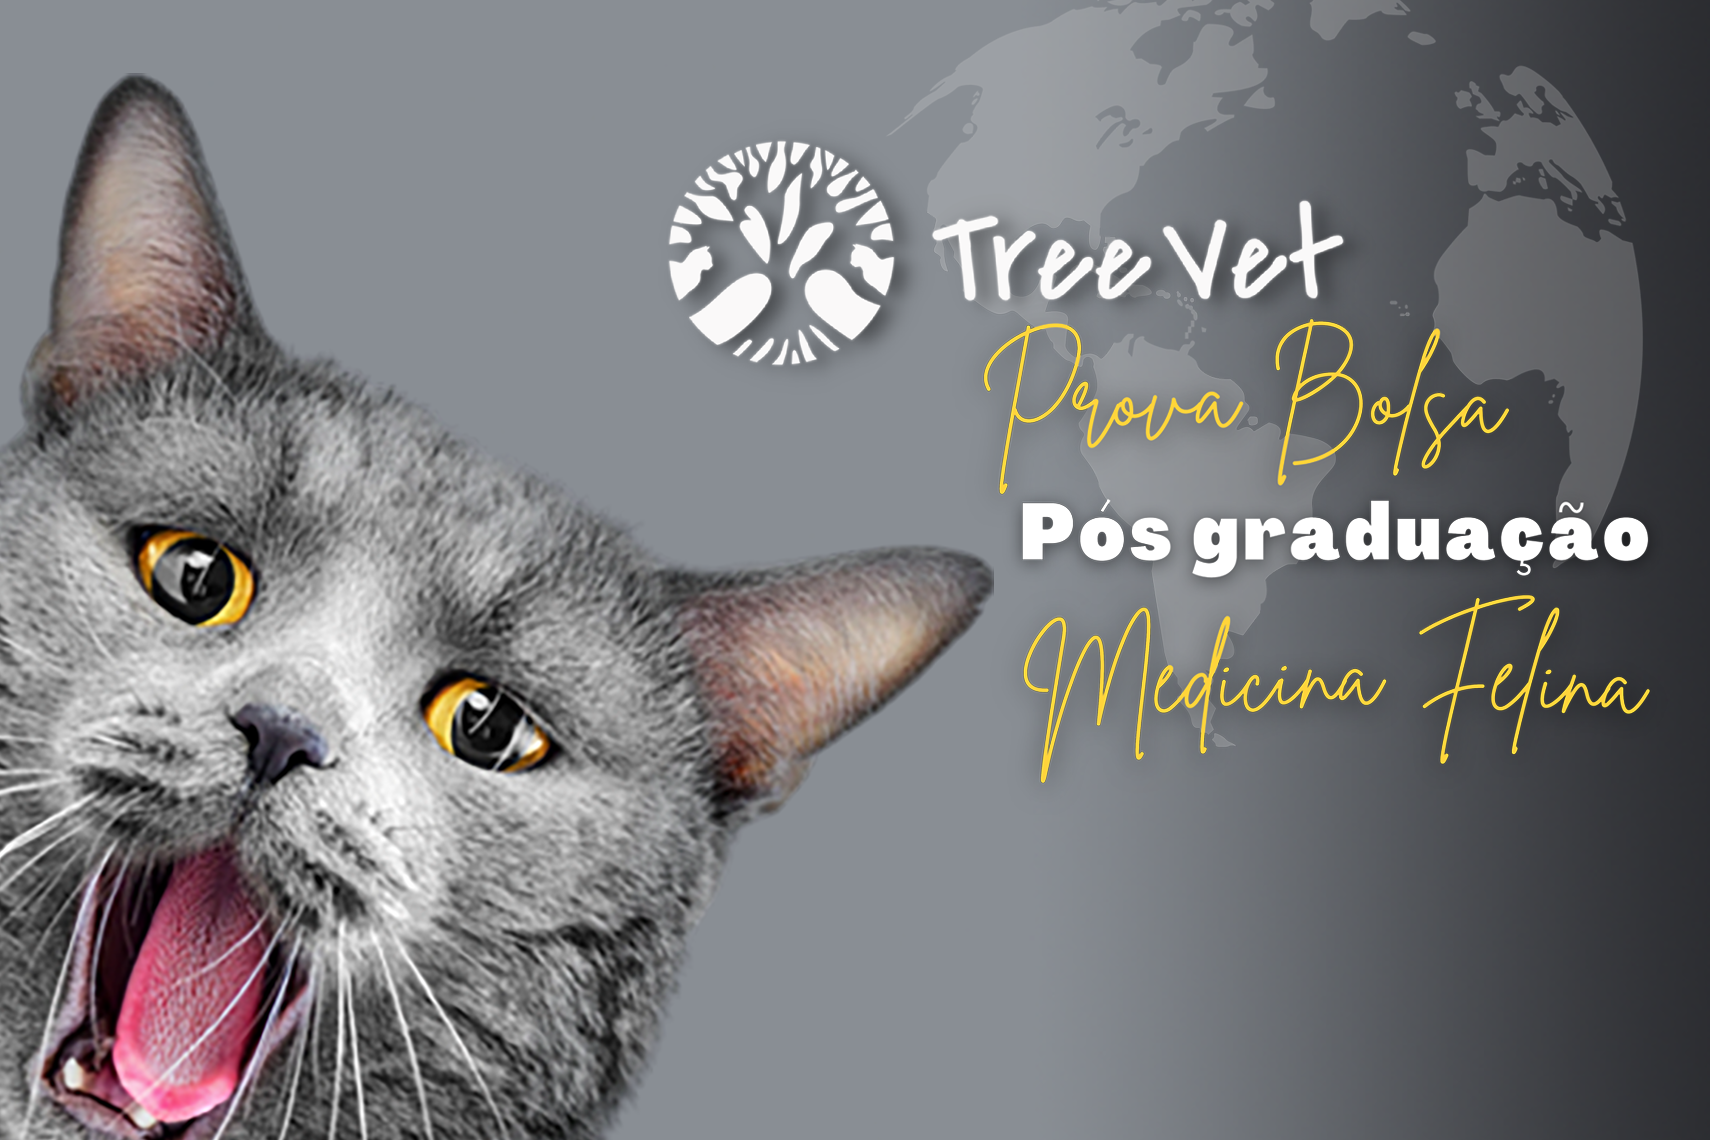 Prova de bolsa - Pós graduação Tree Vet Medicina Felina